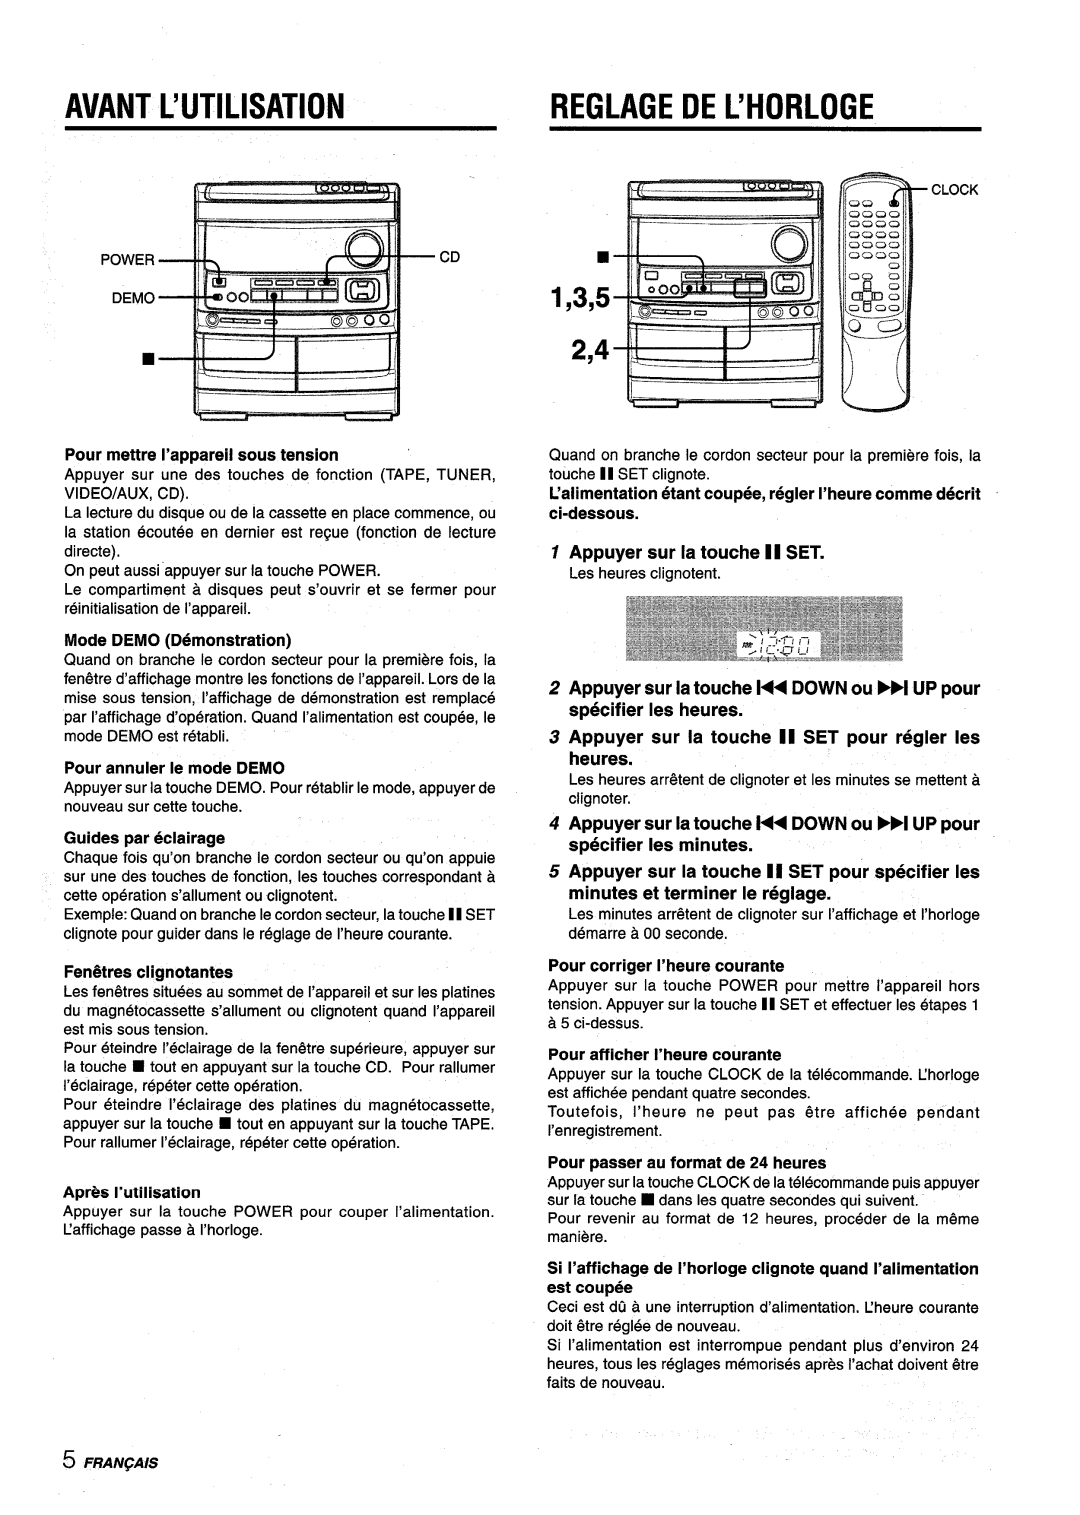 Aiwa NSX-V9000 manual Avant L’Utilisation, Reglagedel’Horloge, 1,3,5 2,4, Apr@sI’utilisation, Appuyer sur la touche 11 SET 